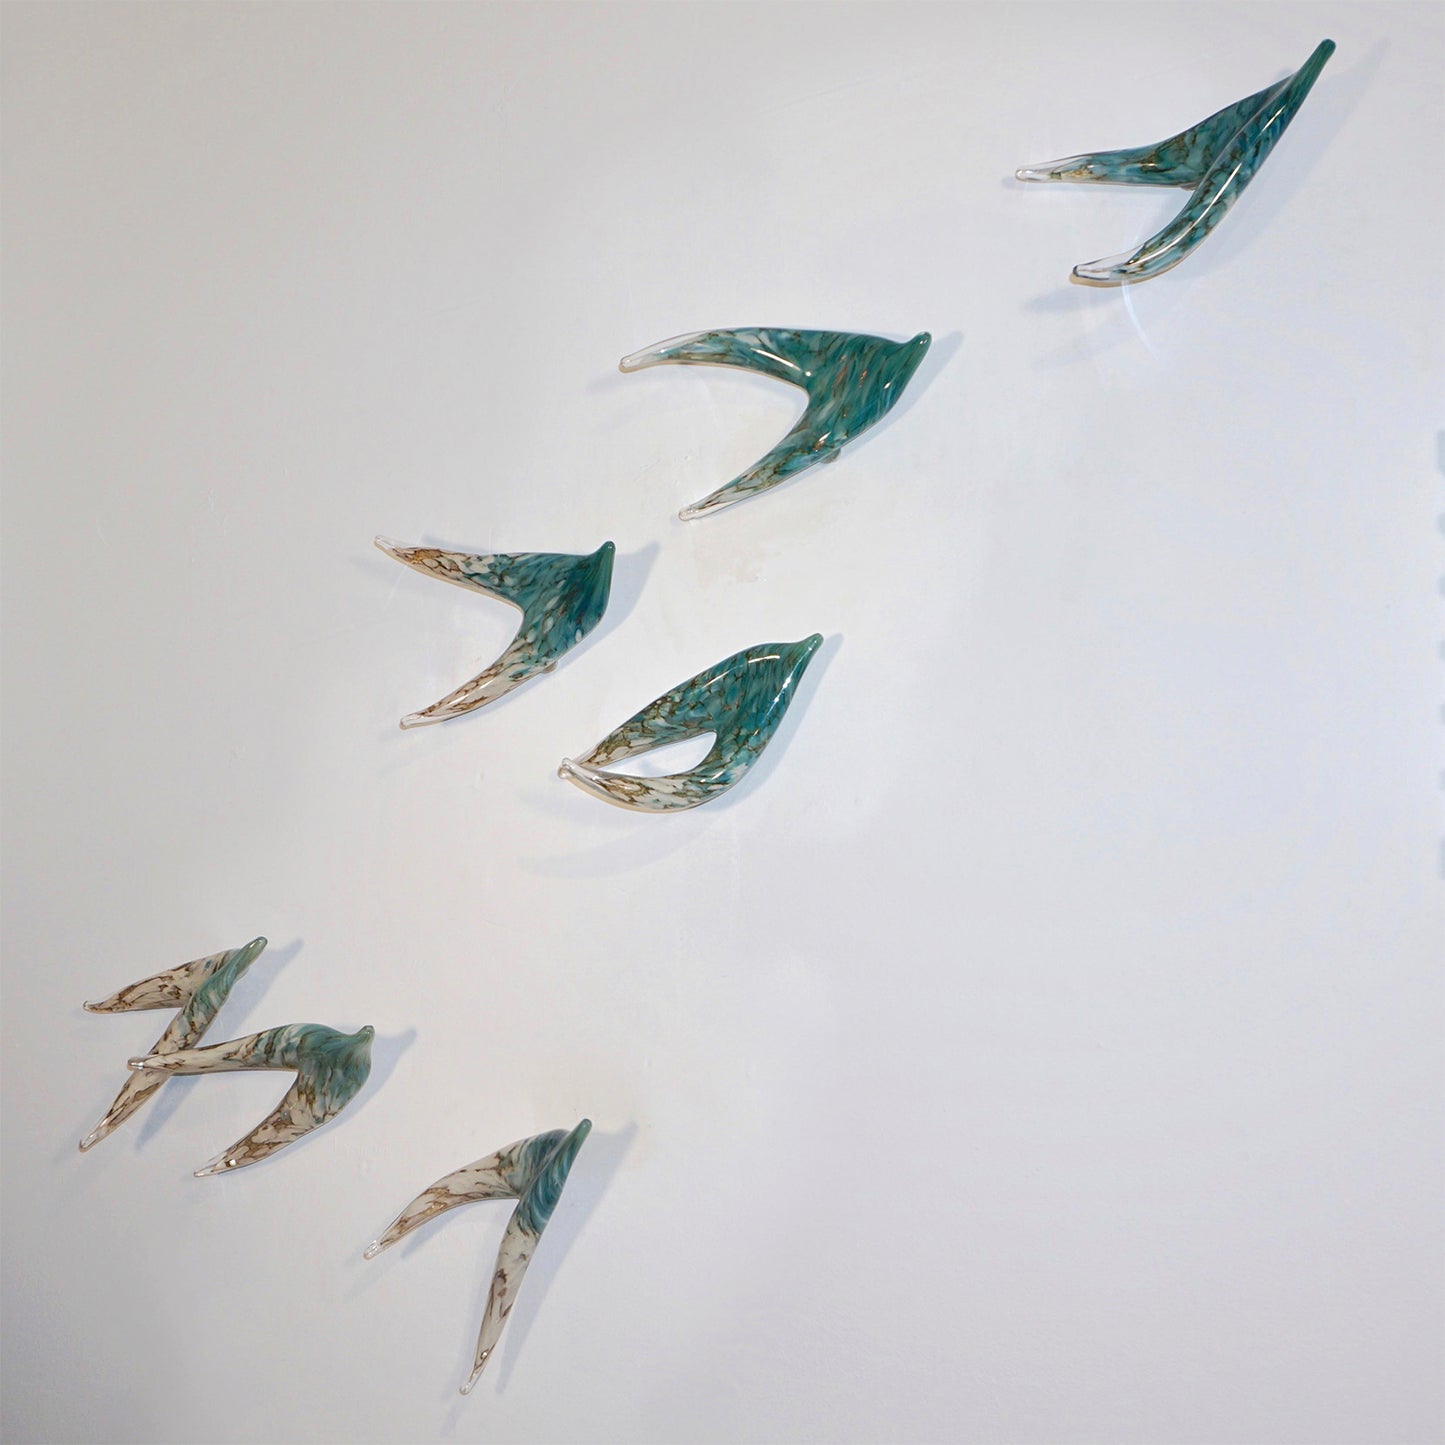 Flight of Aquamarine Birds Contemporary Blown Glass Modern Art Wall Sculpture